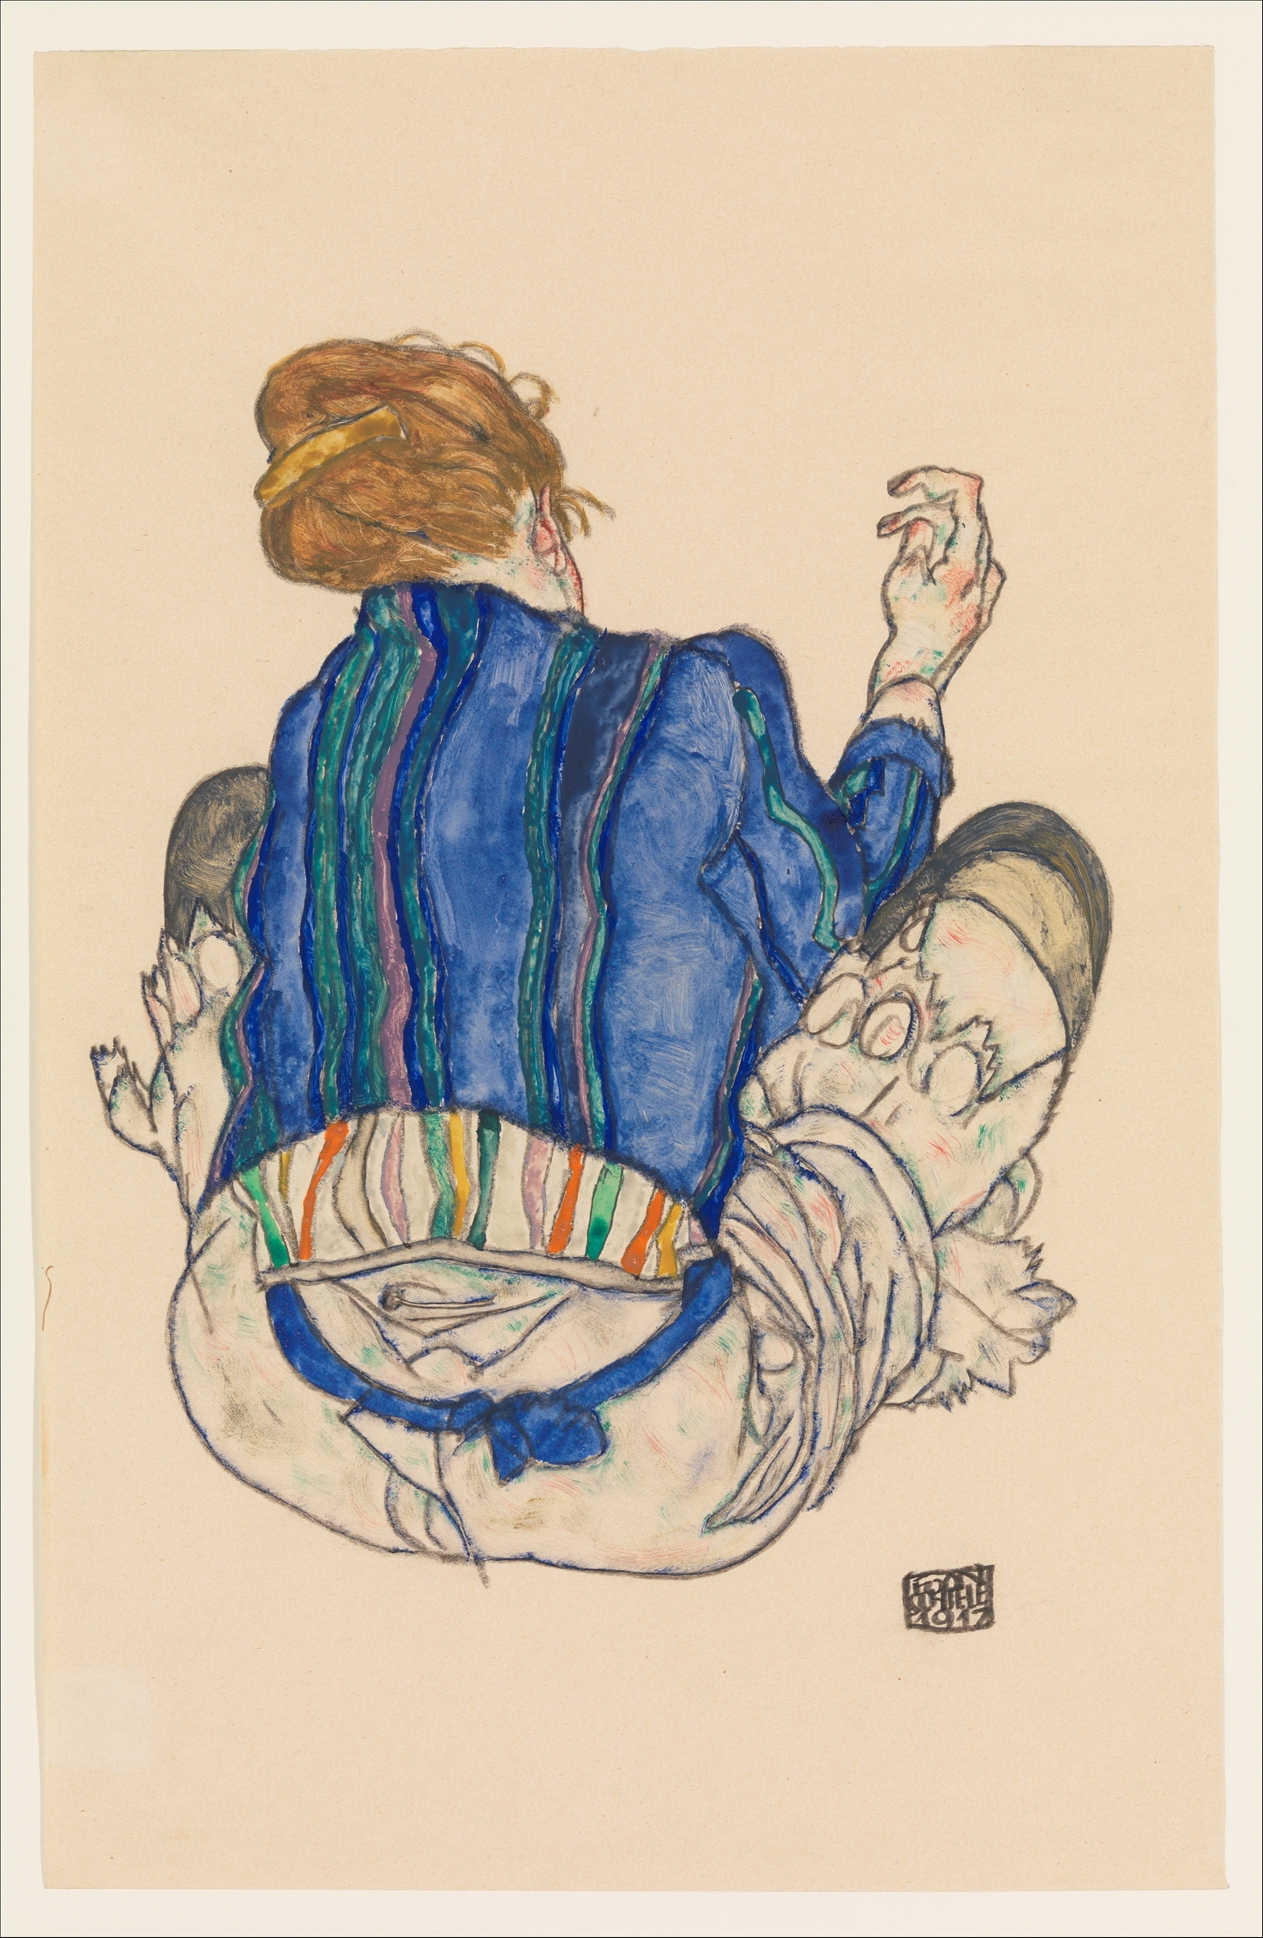 Сидящая женщина, вид сзади by Egon Schiele - 1917 - 46.4 x 29.8 см 